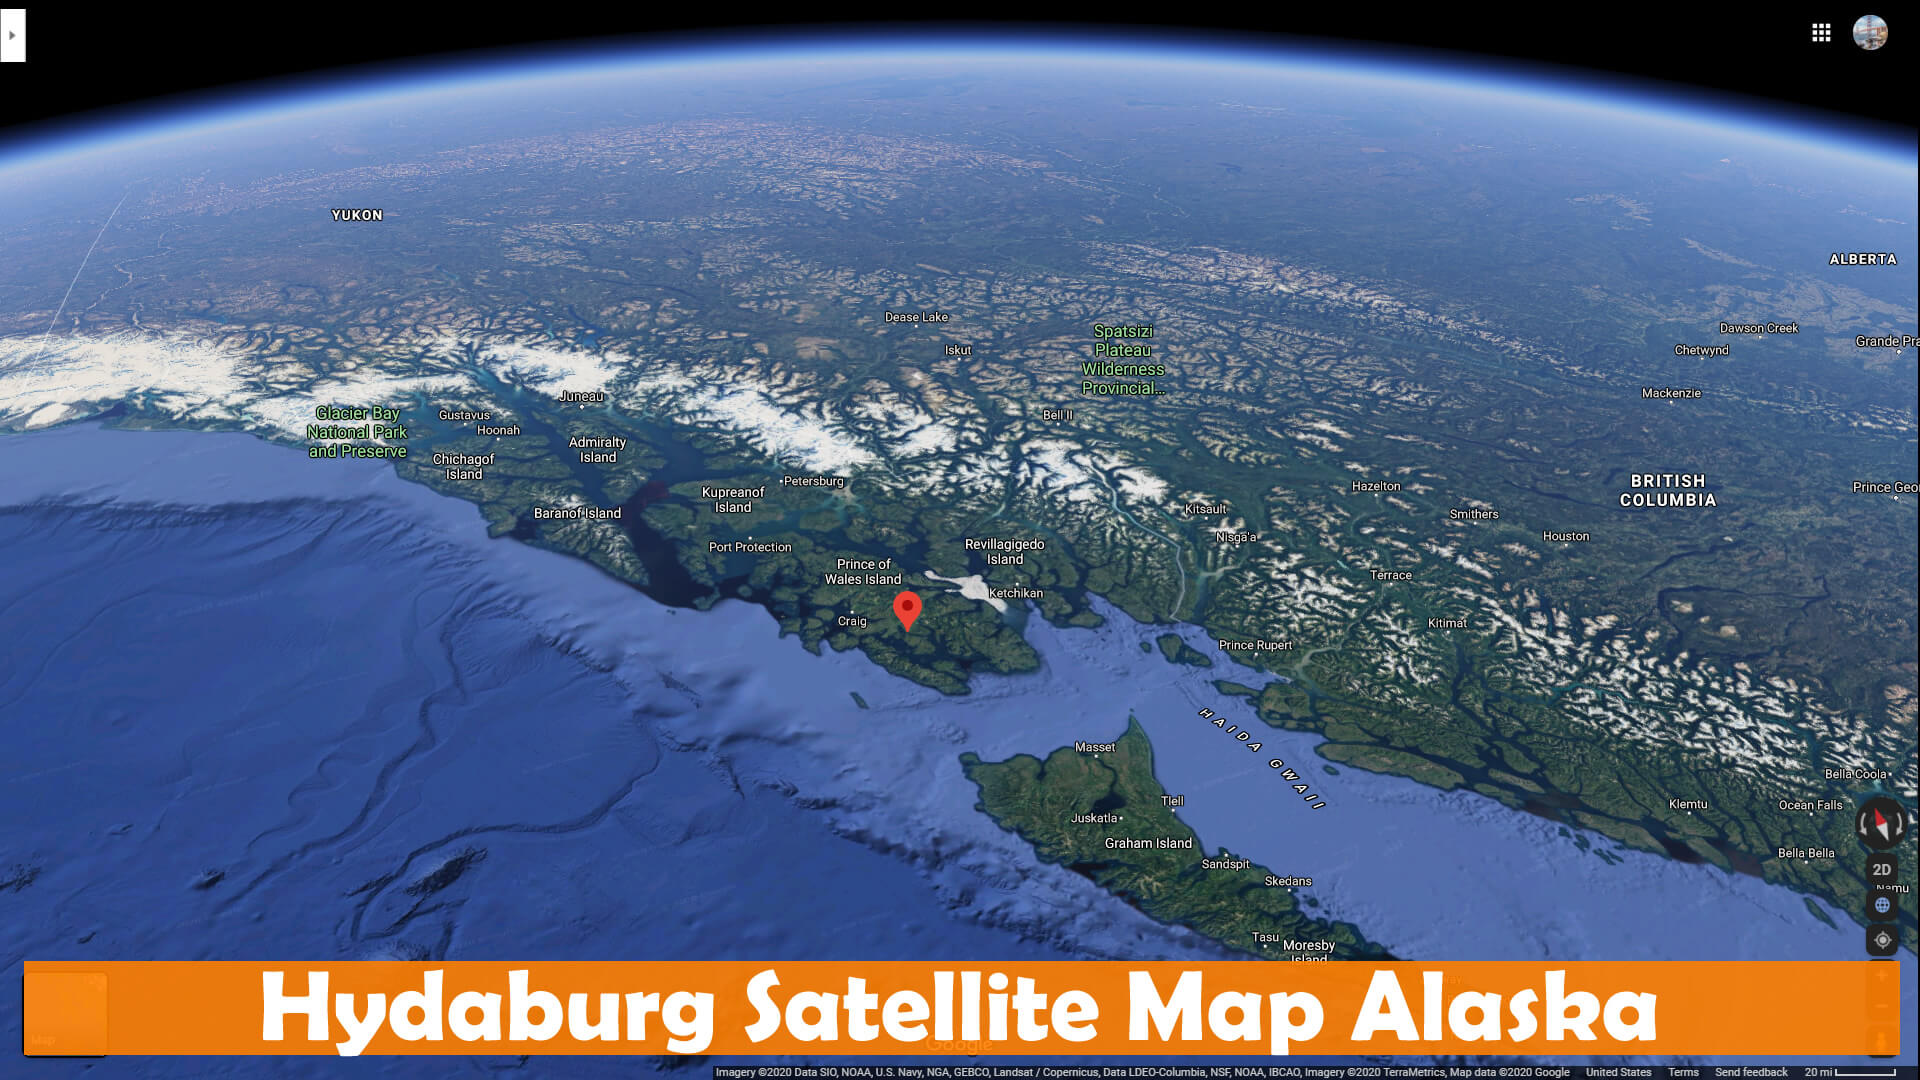 Hydaburg Satellite Map Alaska